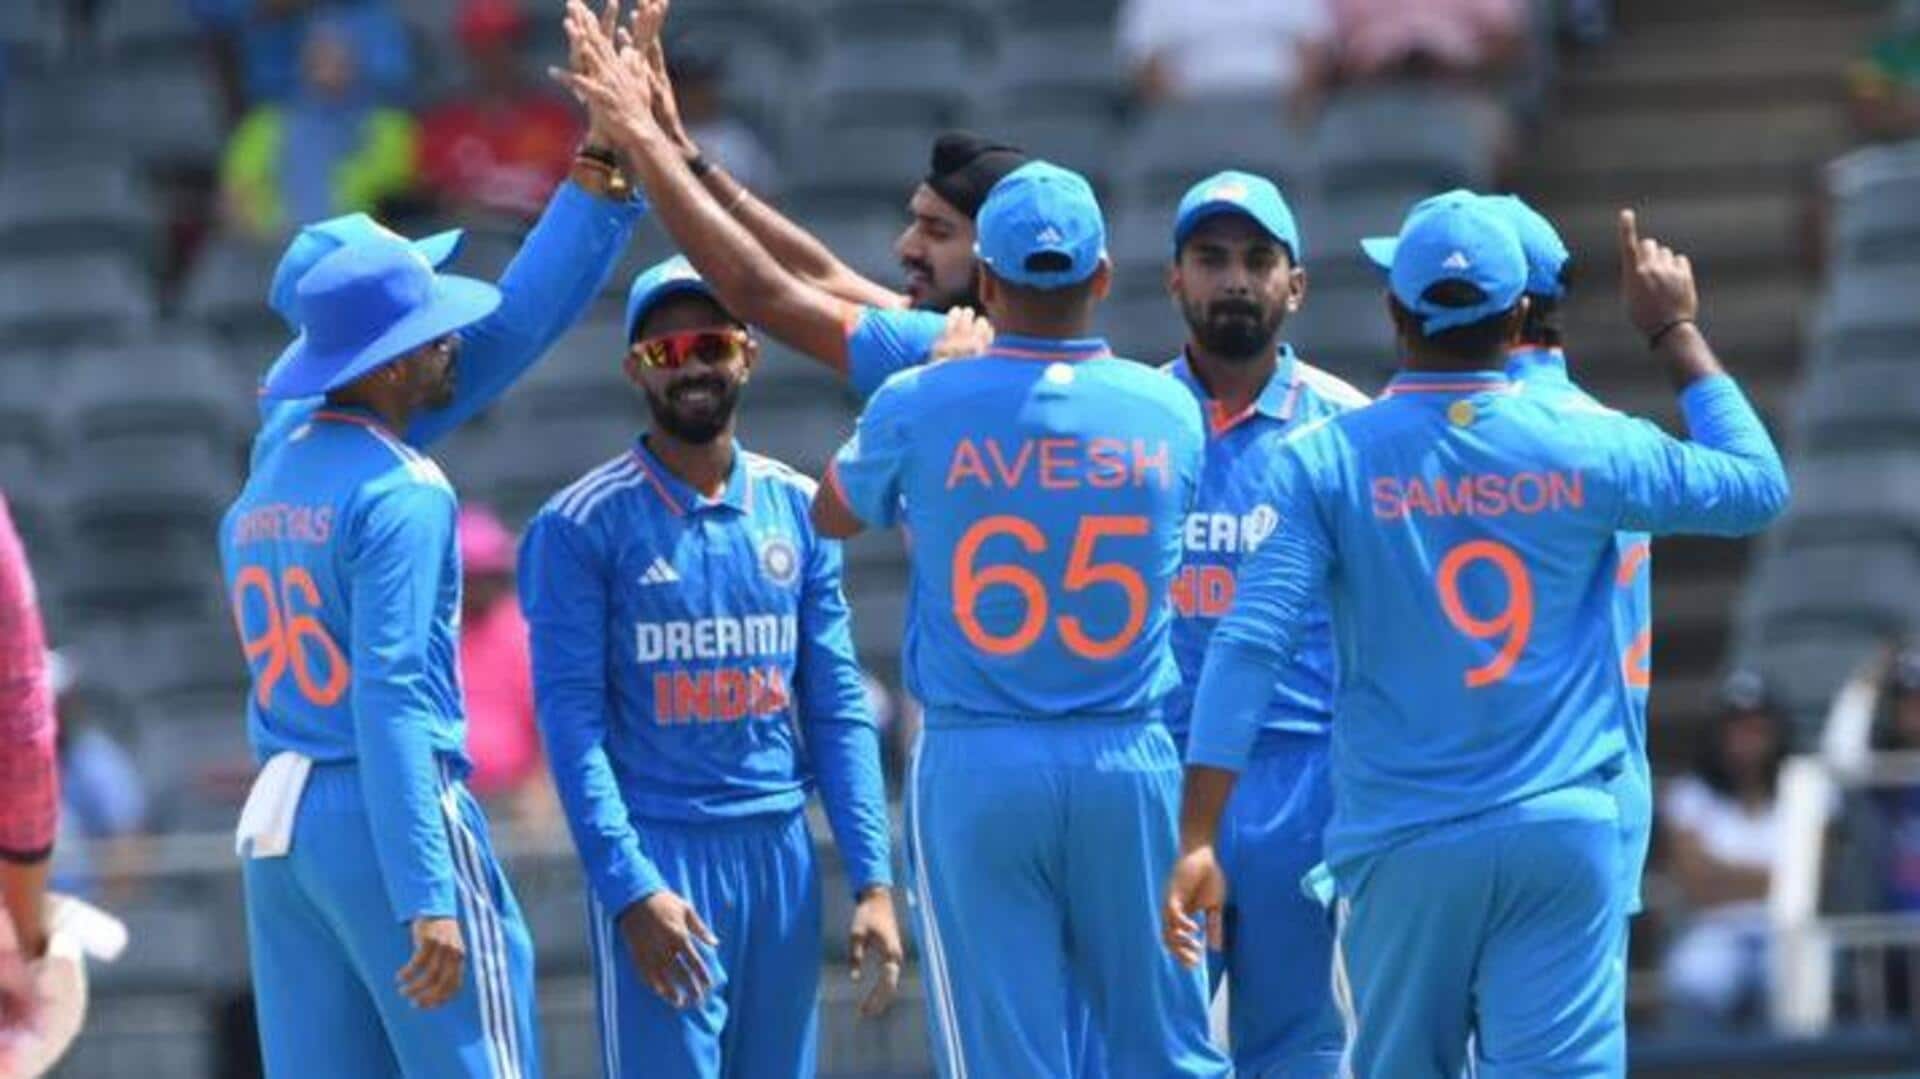 இந்தியா vs தென்னாப்பிரிக்கா முதல் ODI : 116 ரன்களுக்கு சுருண்டது தென்னாப்பிரிக்கா